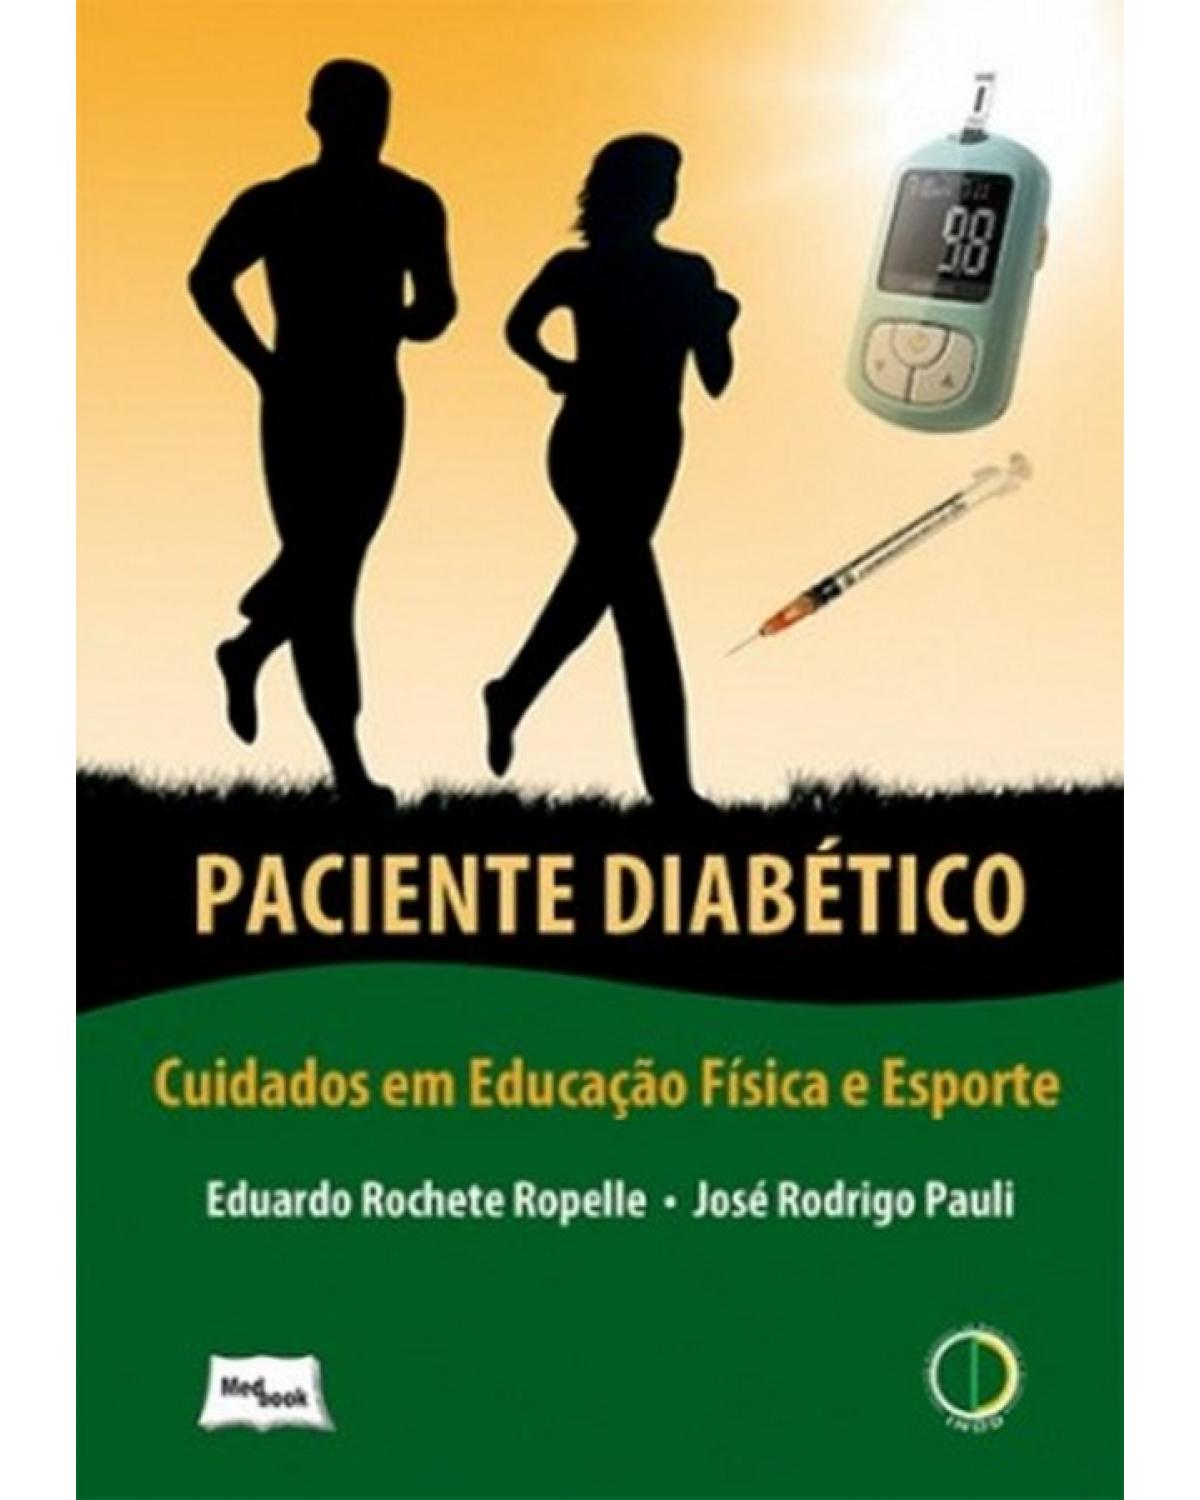 Paciente diabético - cuidados em educação física e esporte - 1ª Edição | 2013